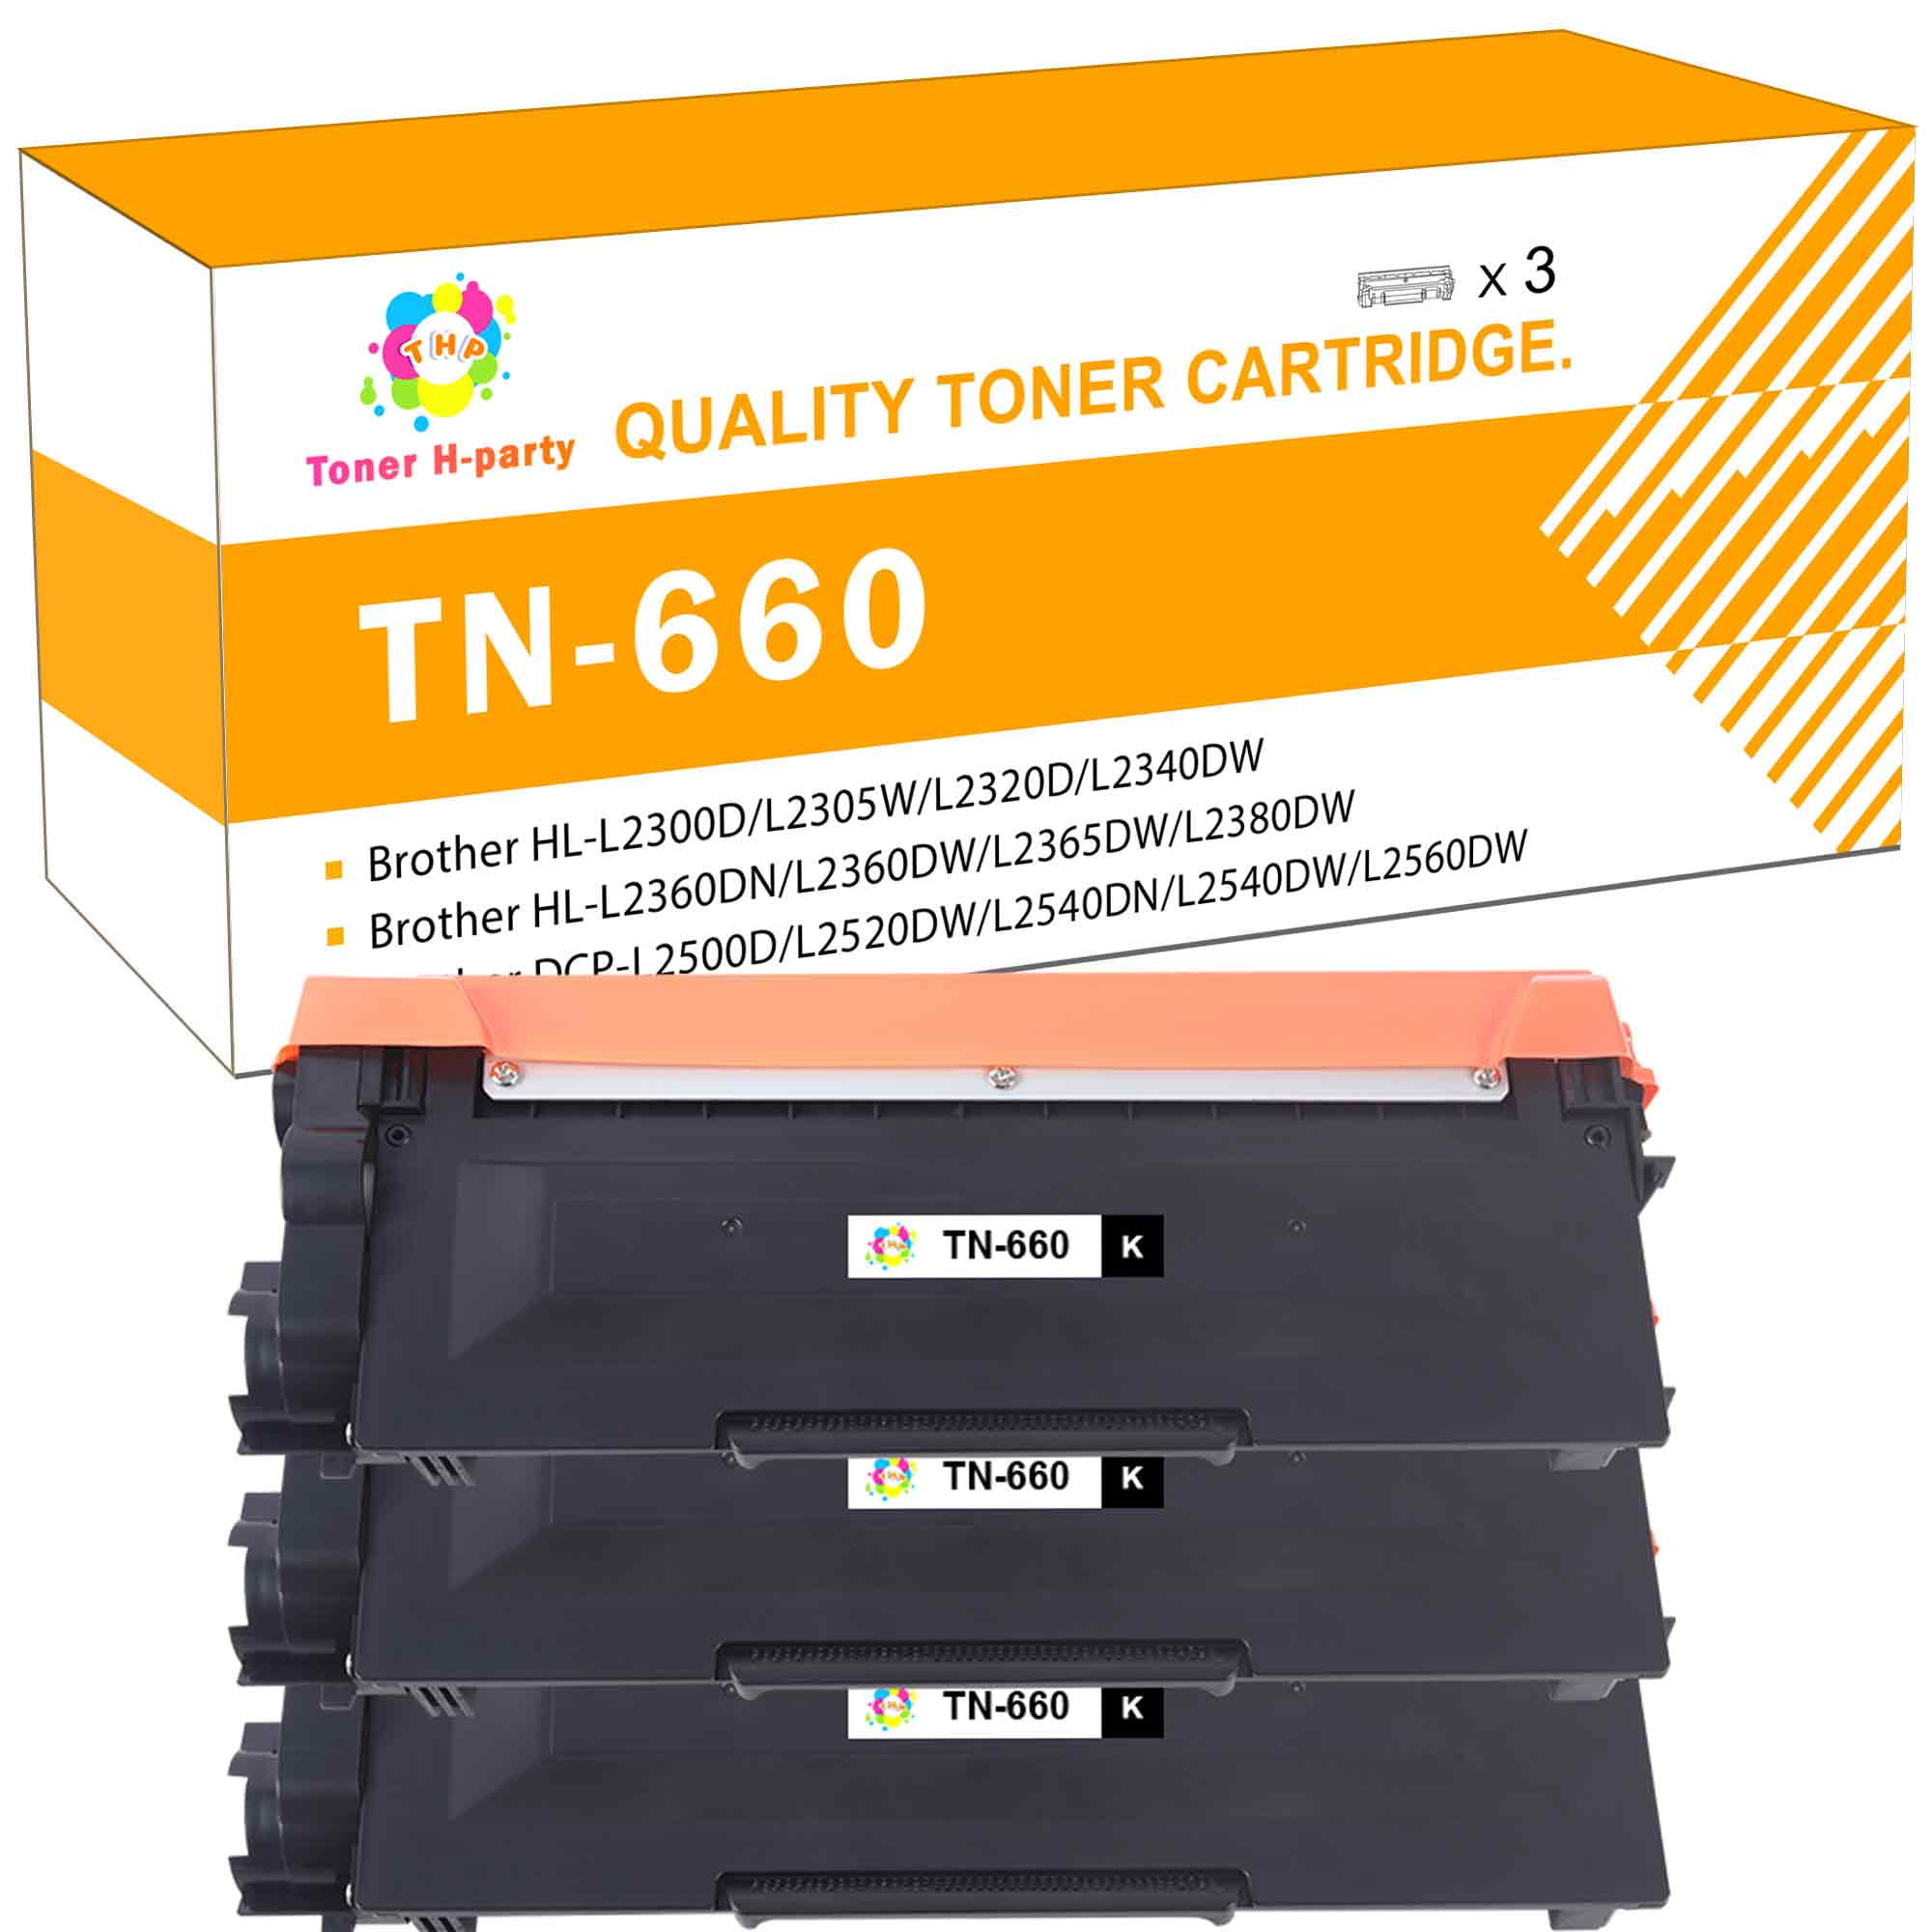 Toner H-Party 10-Pack Compatible Toner Cartridge for Brother TN-660 TN-660 TN 660 630 TN-630 HL-L2300D HL-L2380DW HL-L2320D HL-L2340DW L2540DW Printer Ink Black - Walmart.com